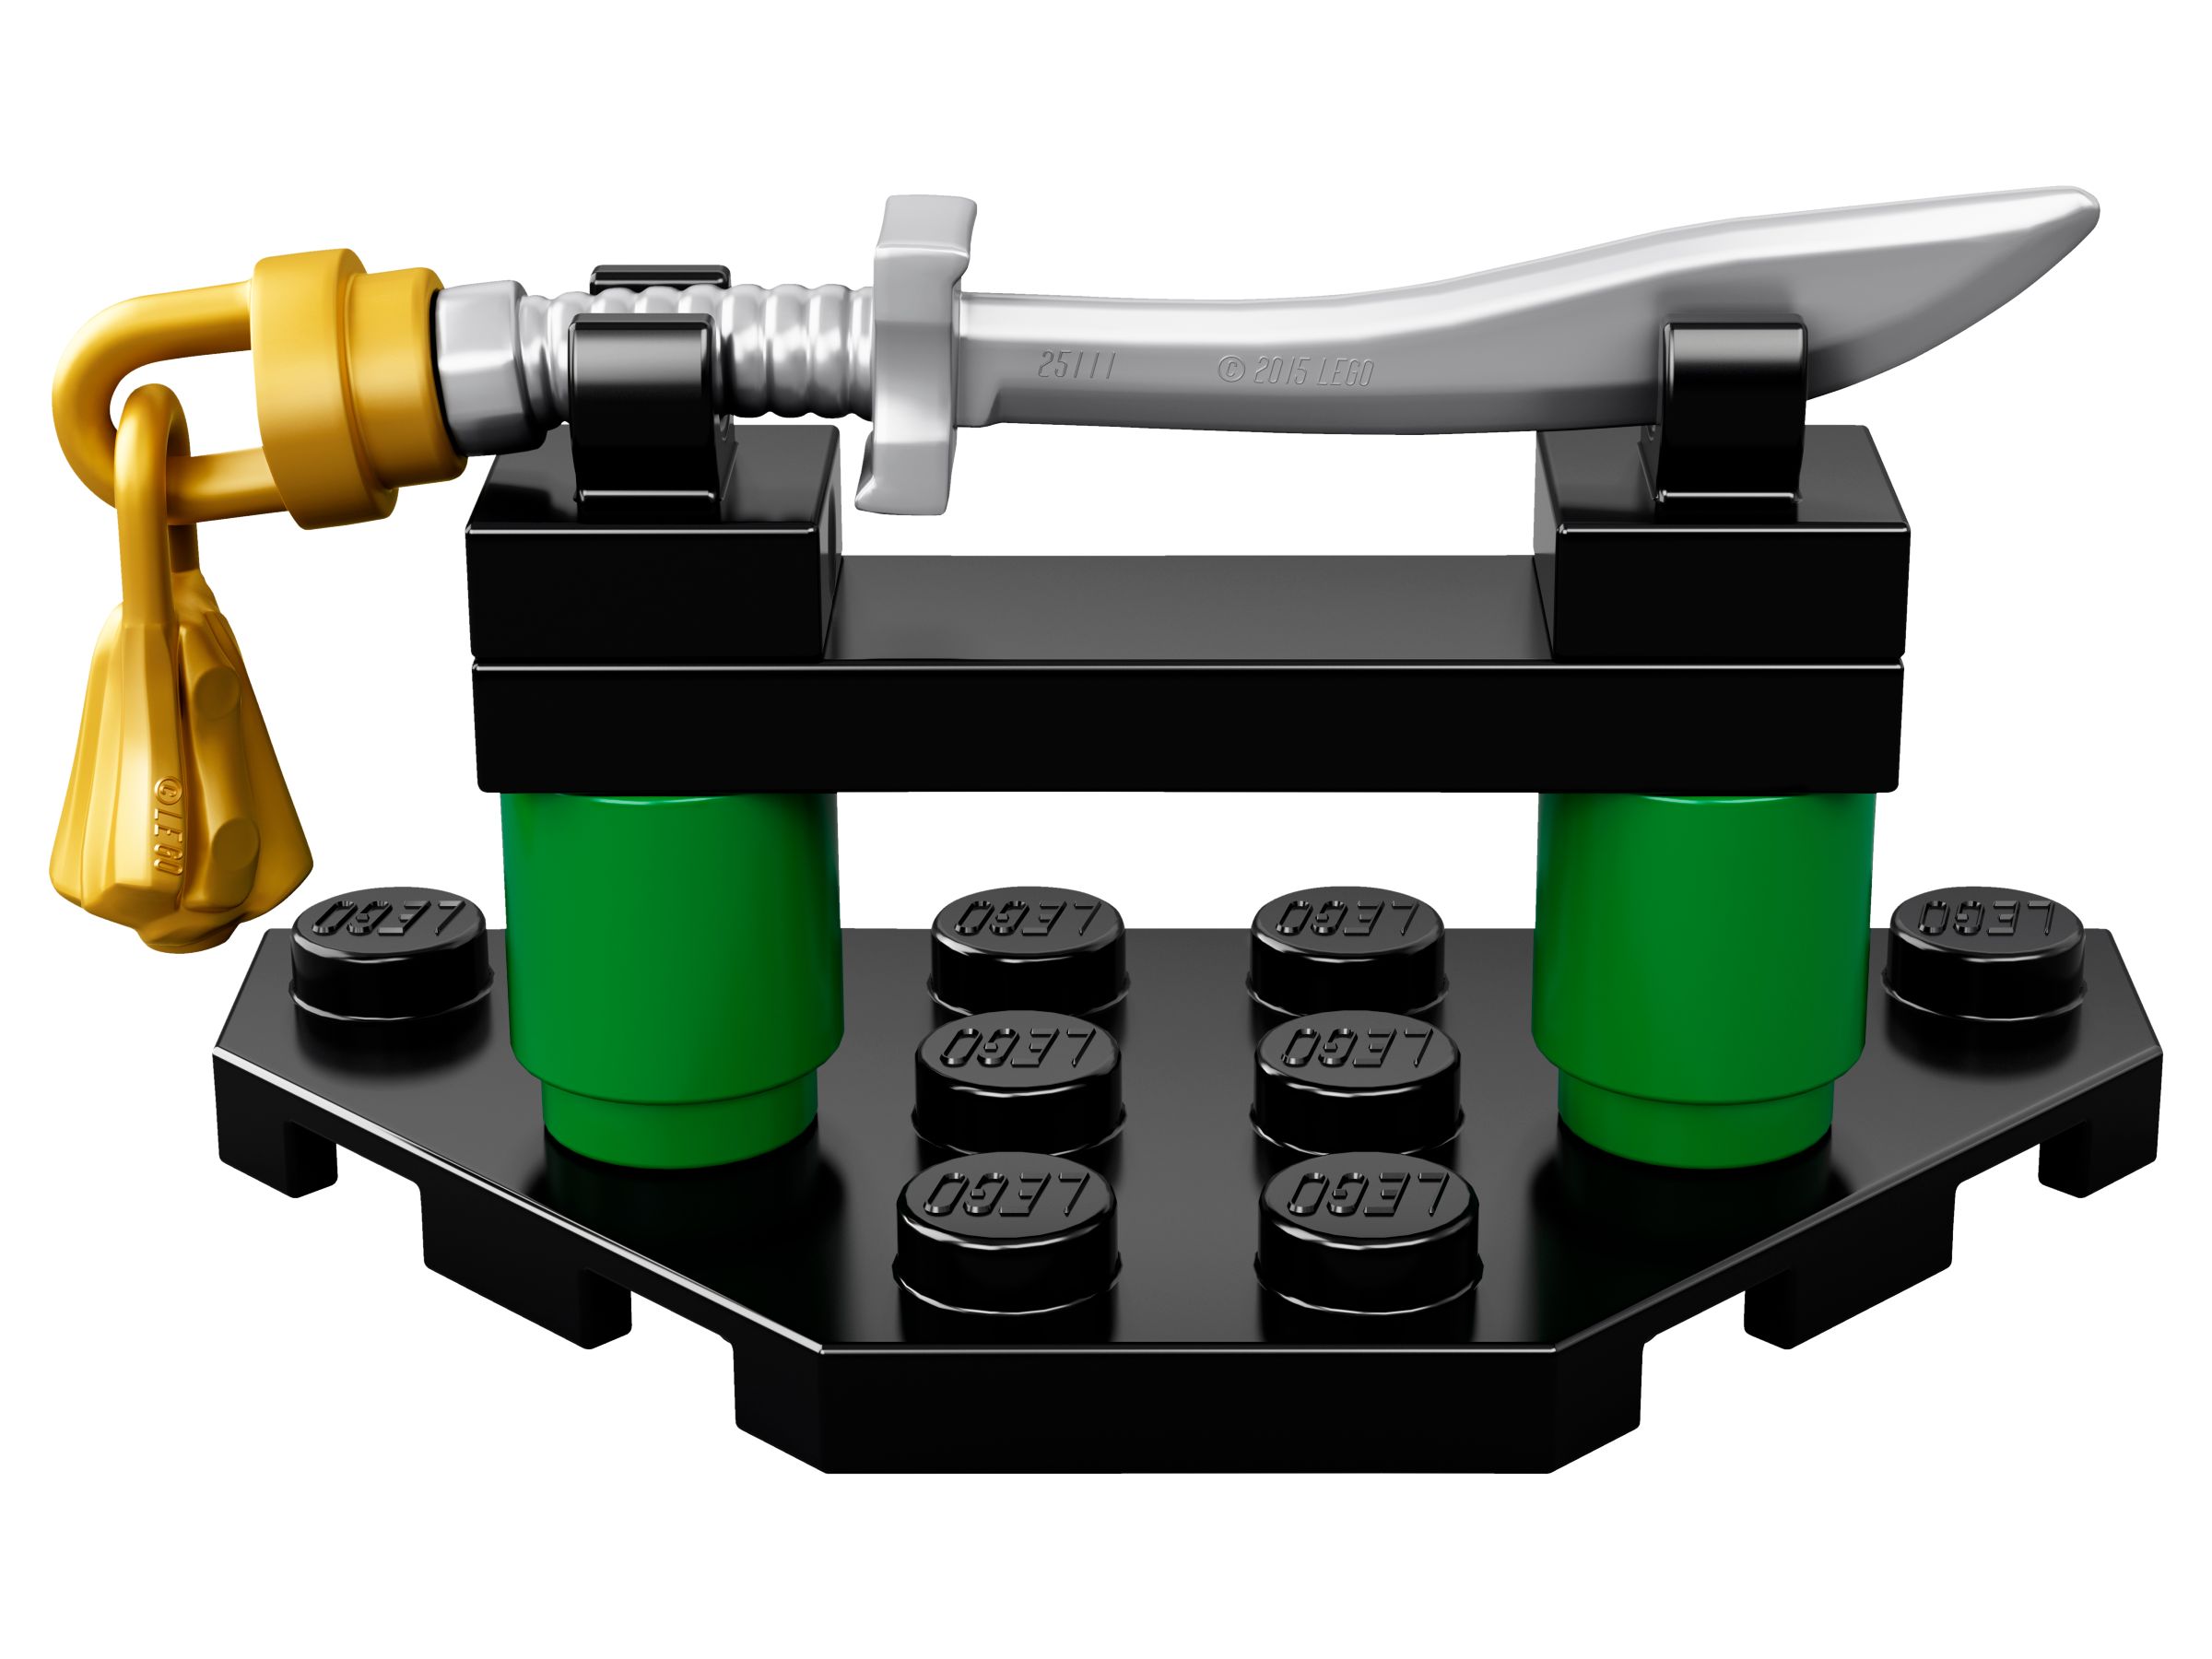 LEGO The LEGO Ninjago Movie 70628 Spinjitzu-Meister Lloyd LEGO_70628_alt5.jpg